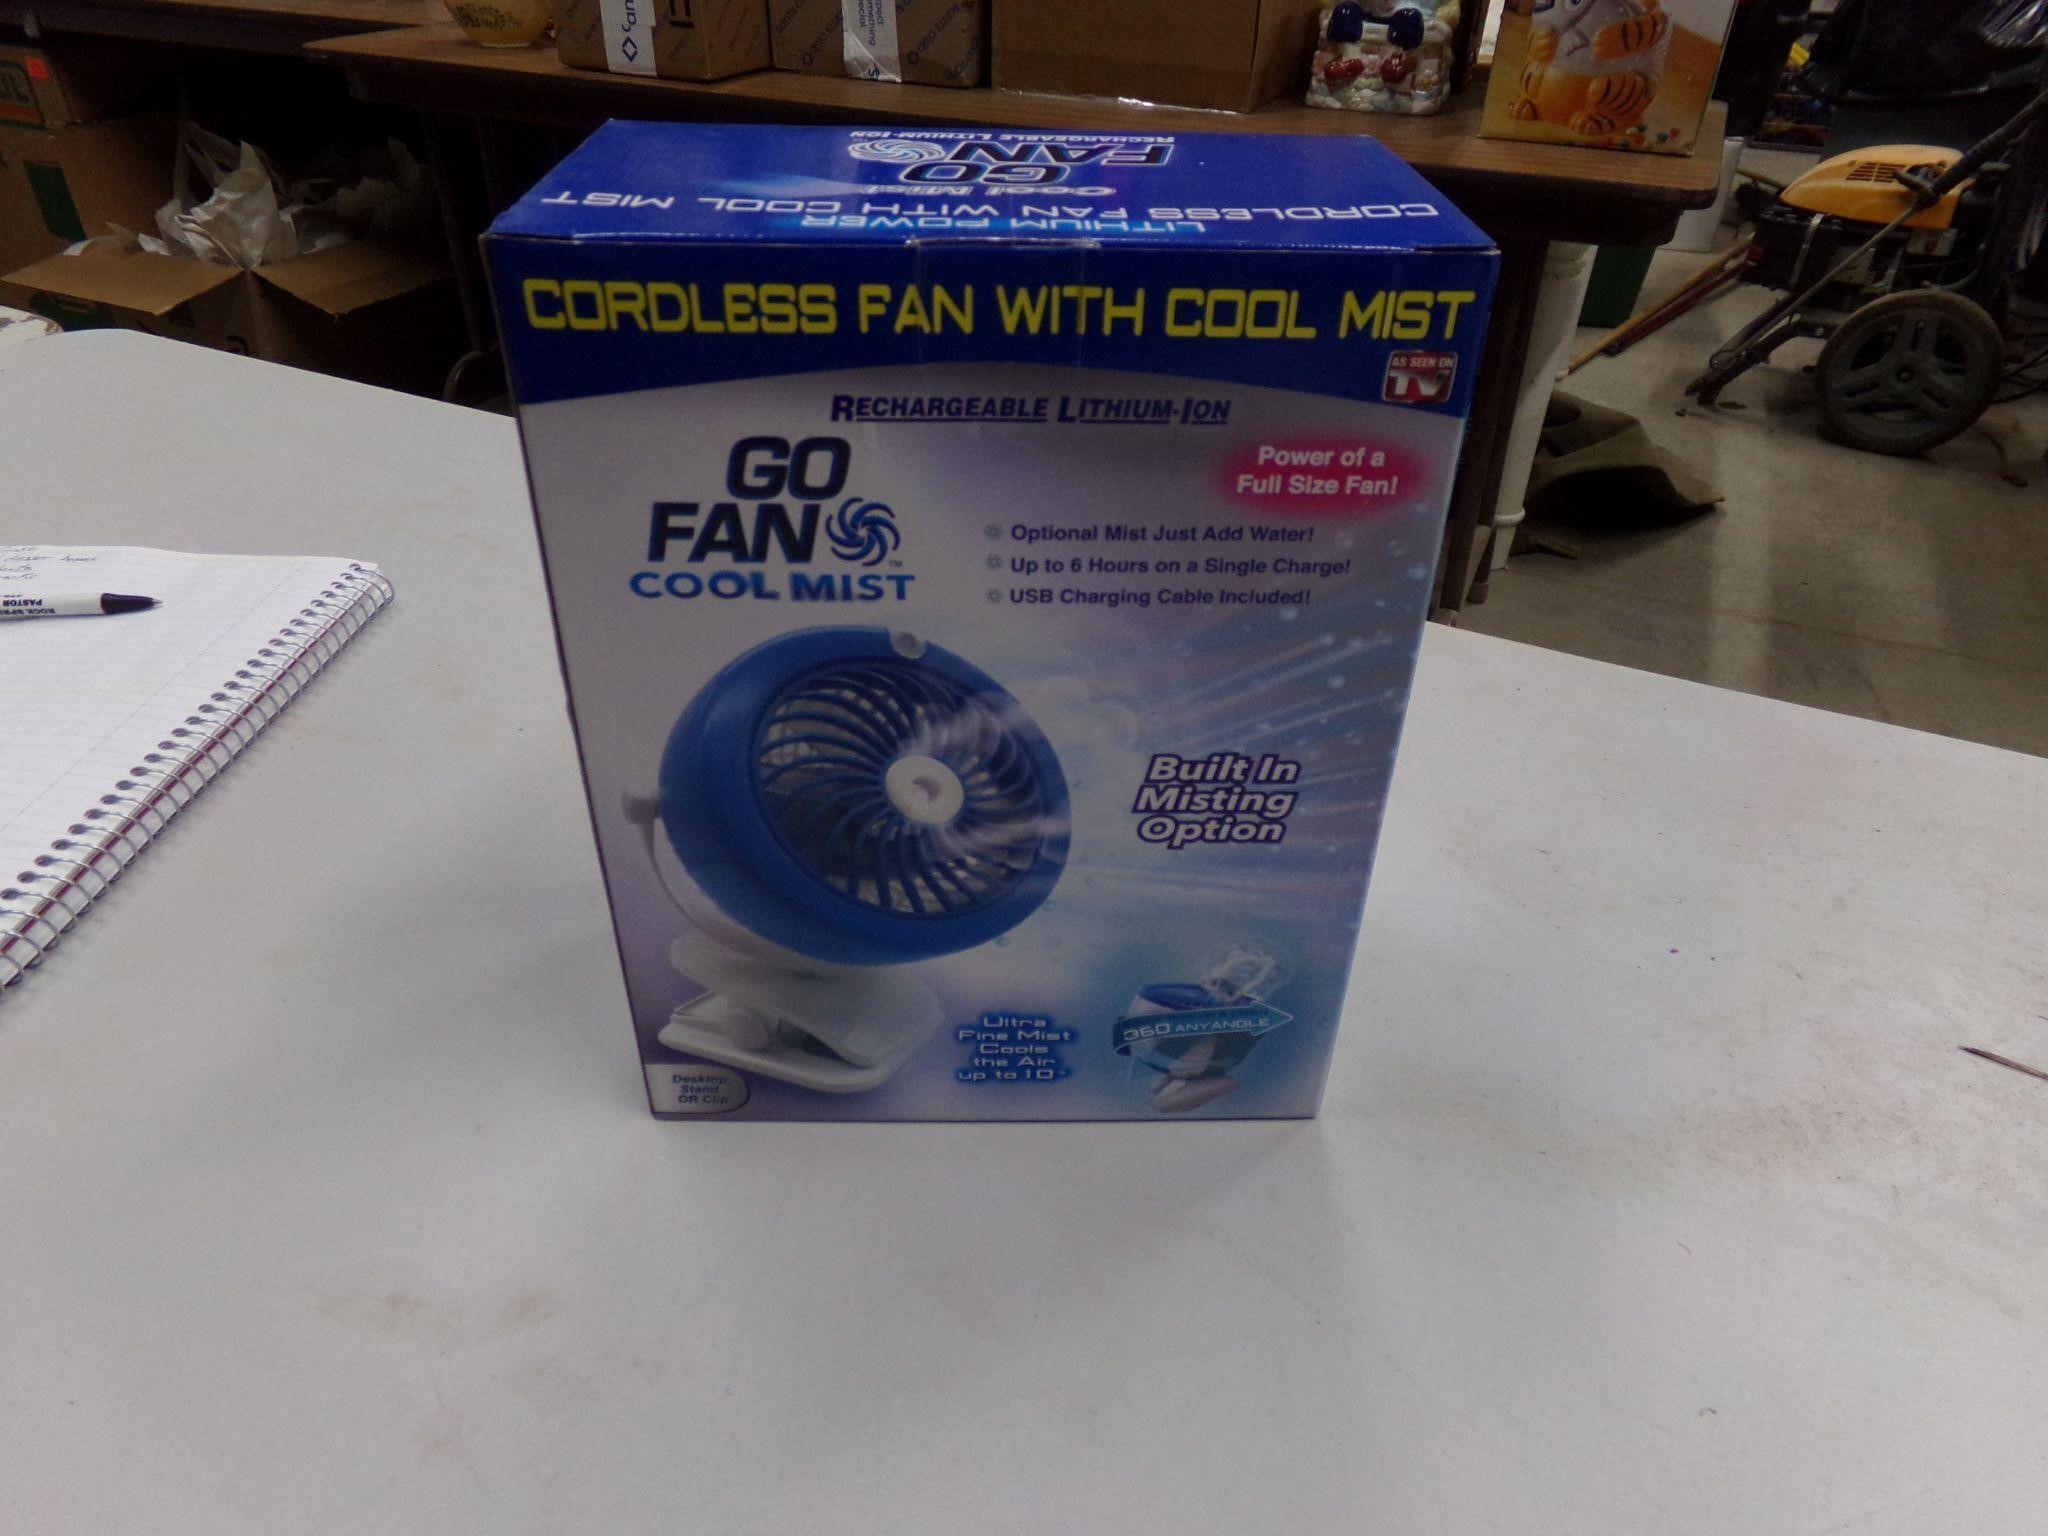 Cordless fan